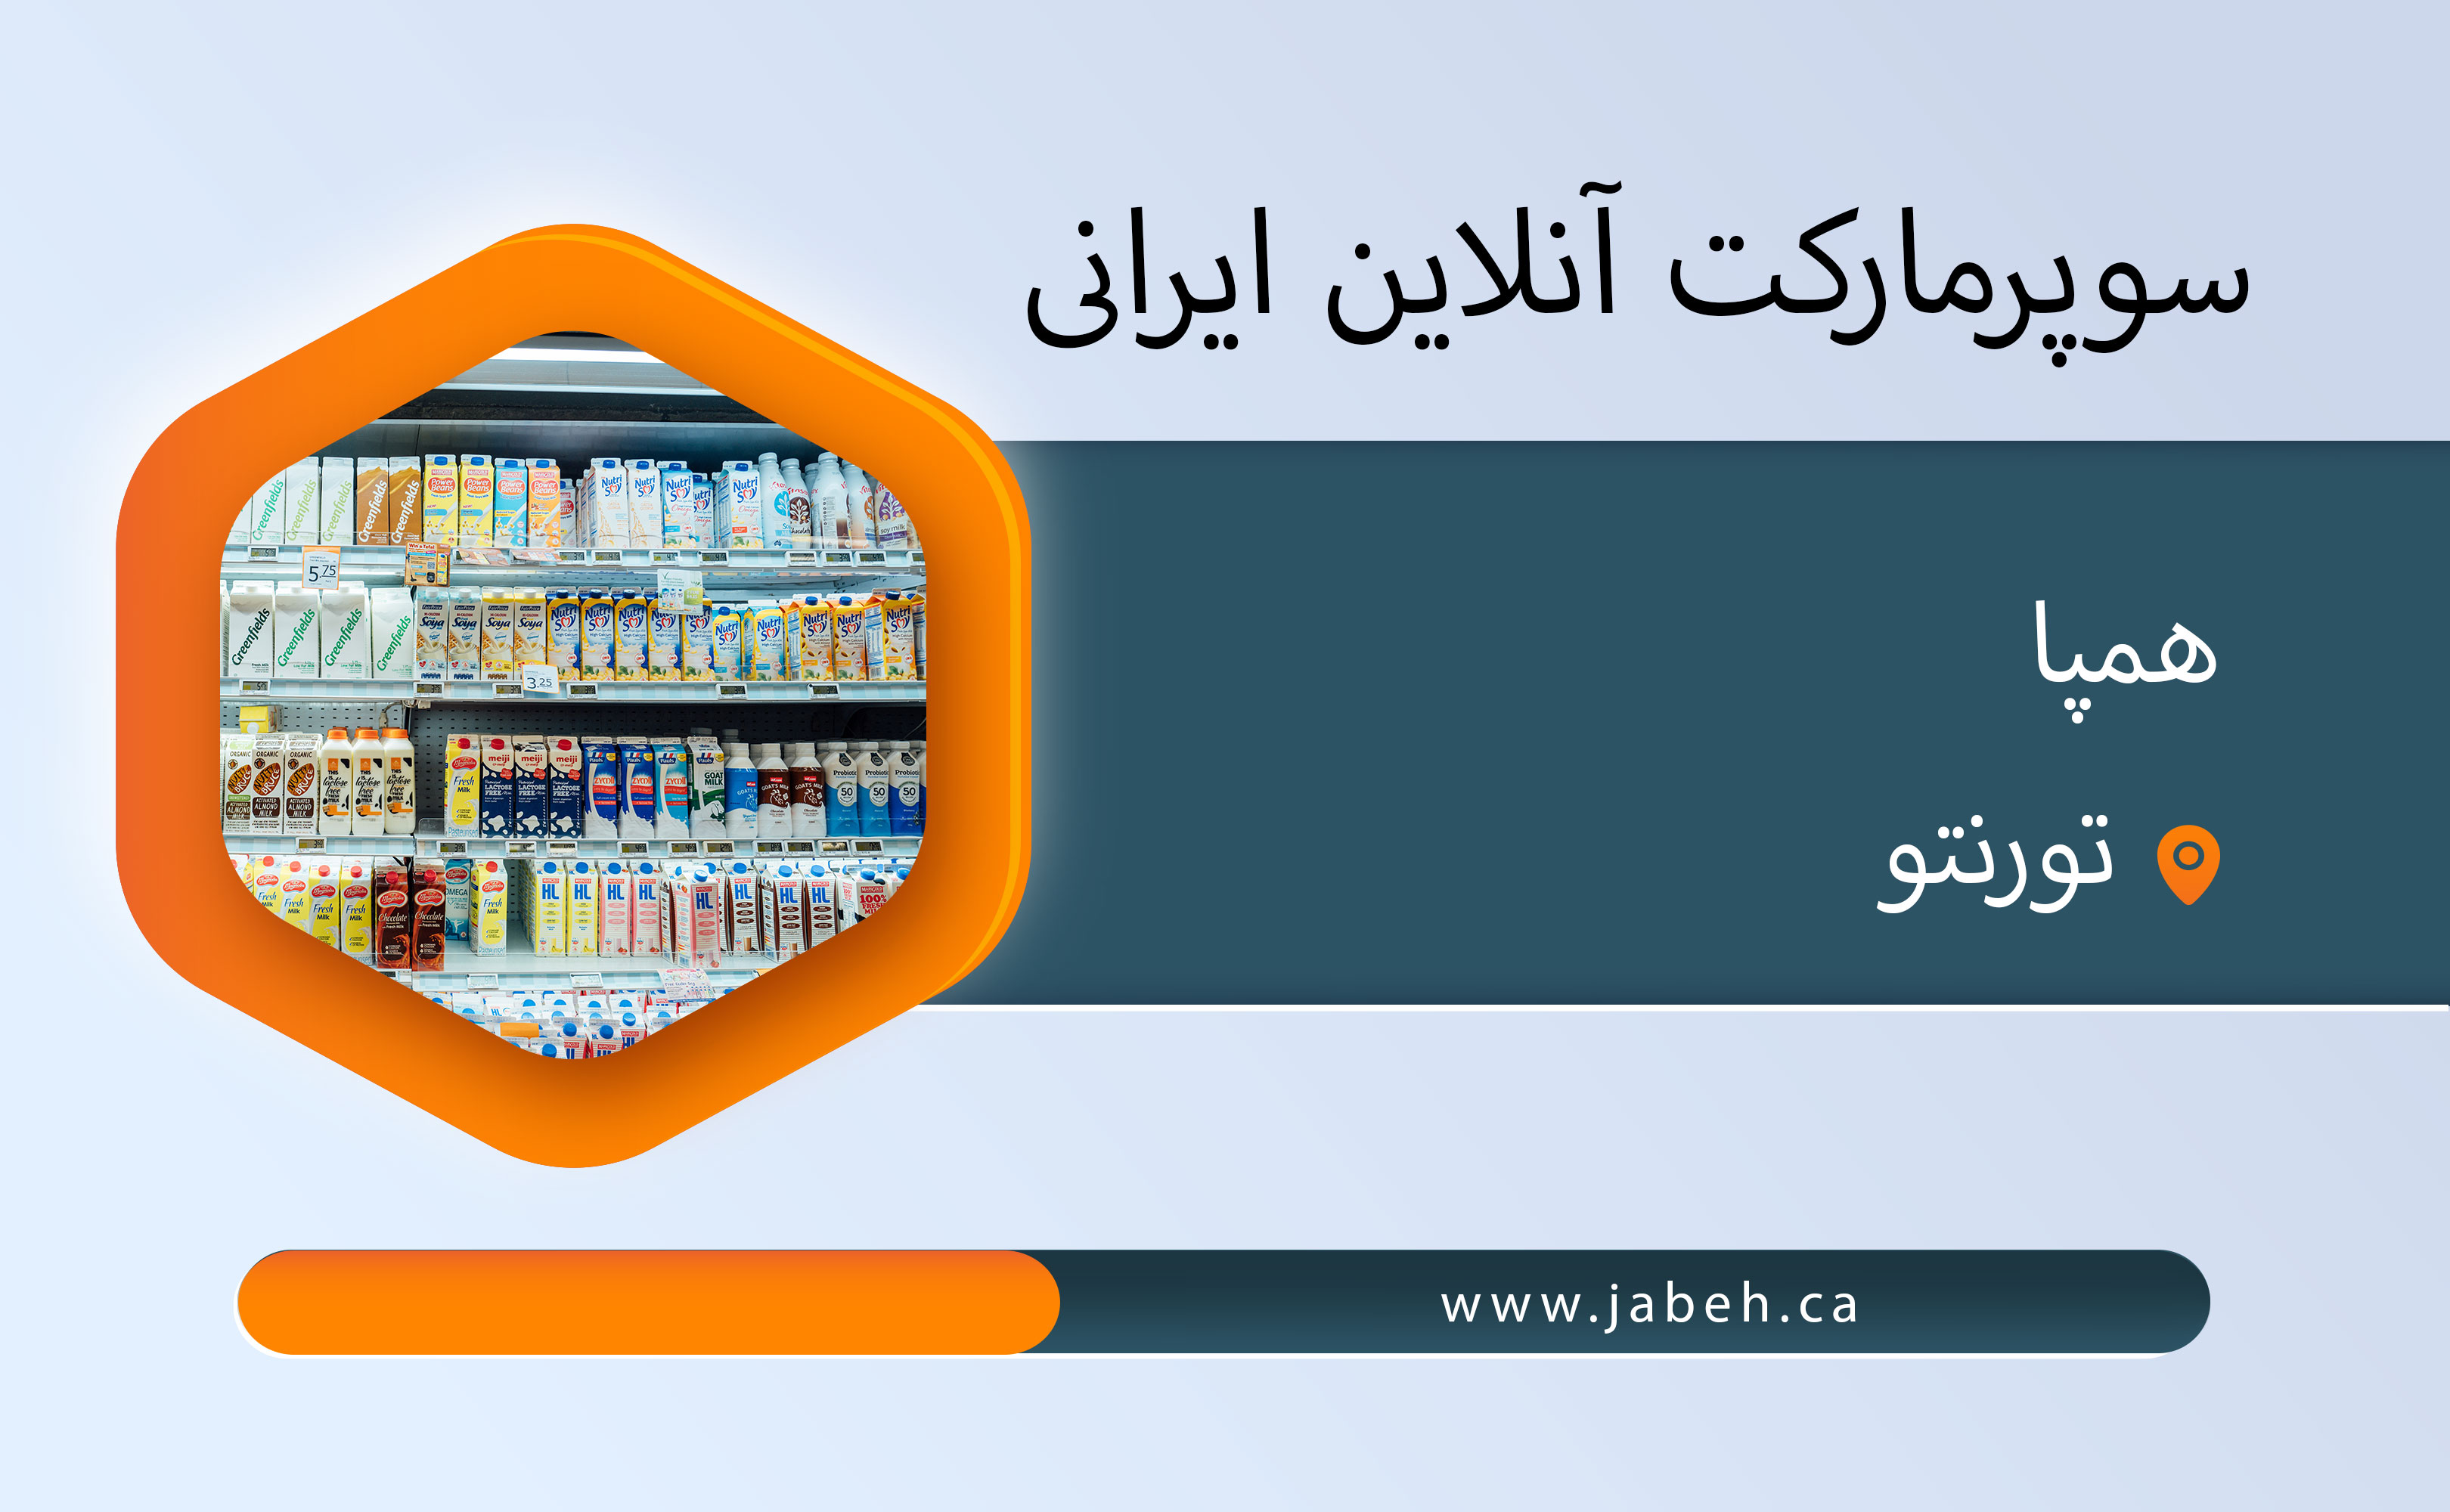 سوپرمارکت آنلاین ایرانی همپا در تورنتو